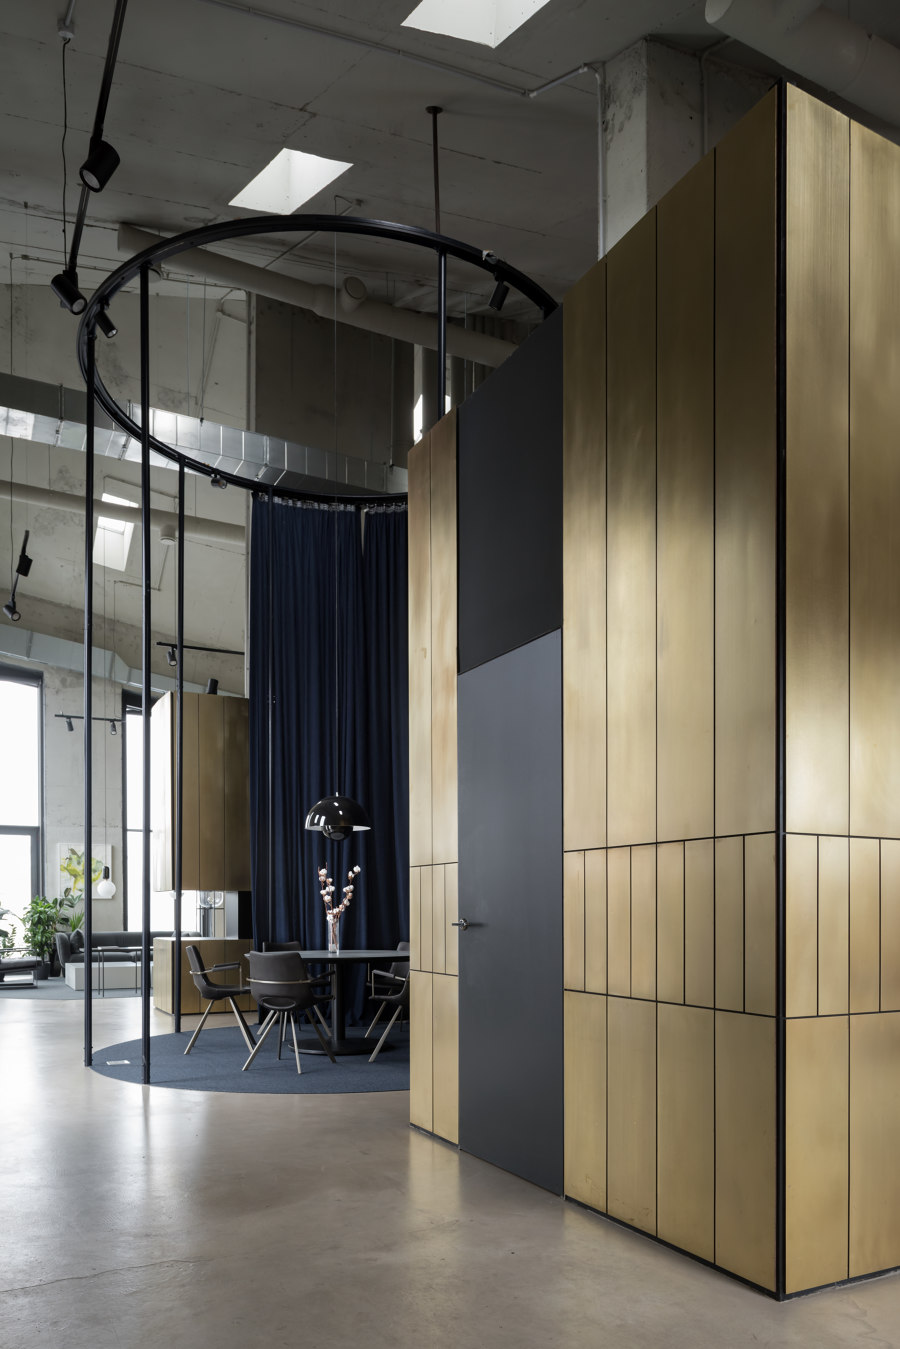 NV/9  ARTKVARTAL, Sales Office by Alexander Volkov Architects | Office facilities